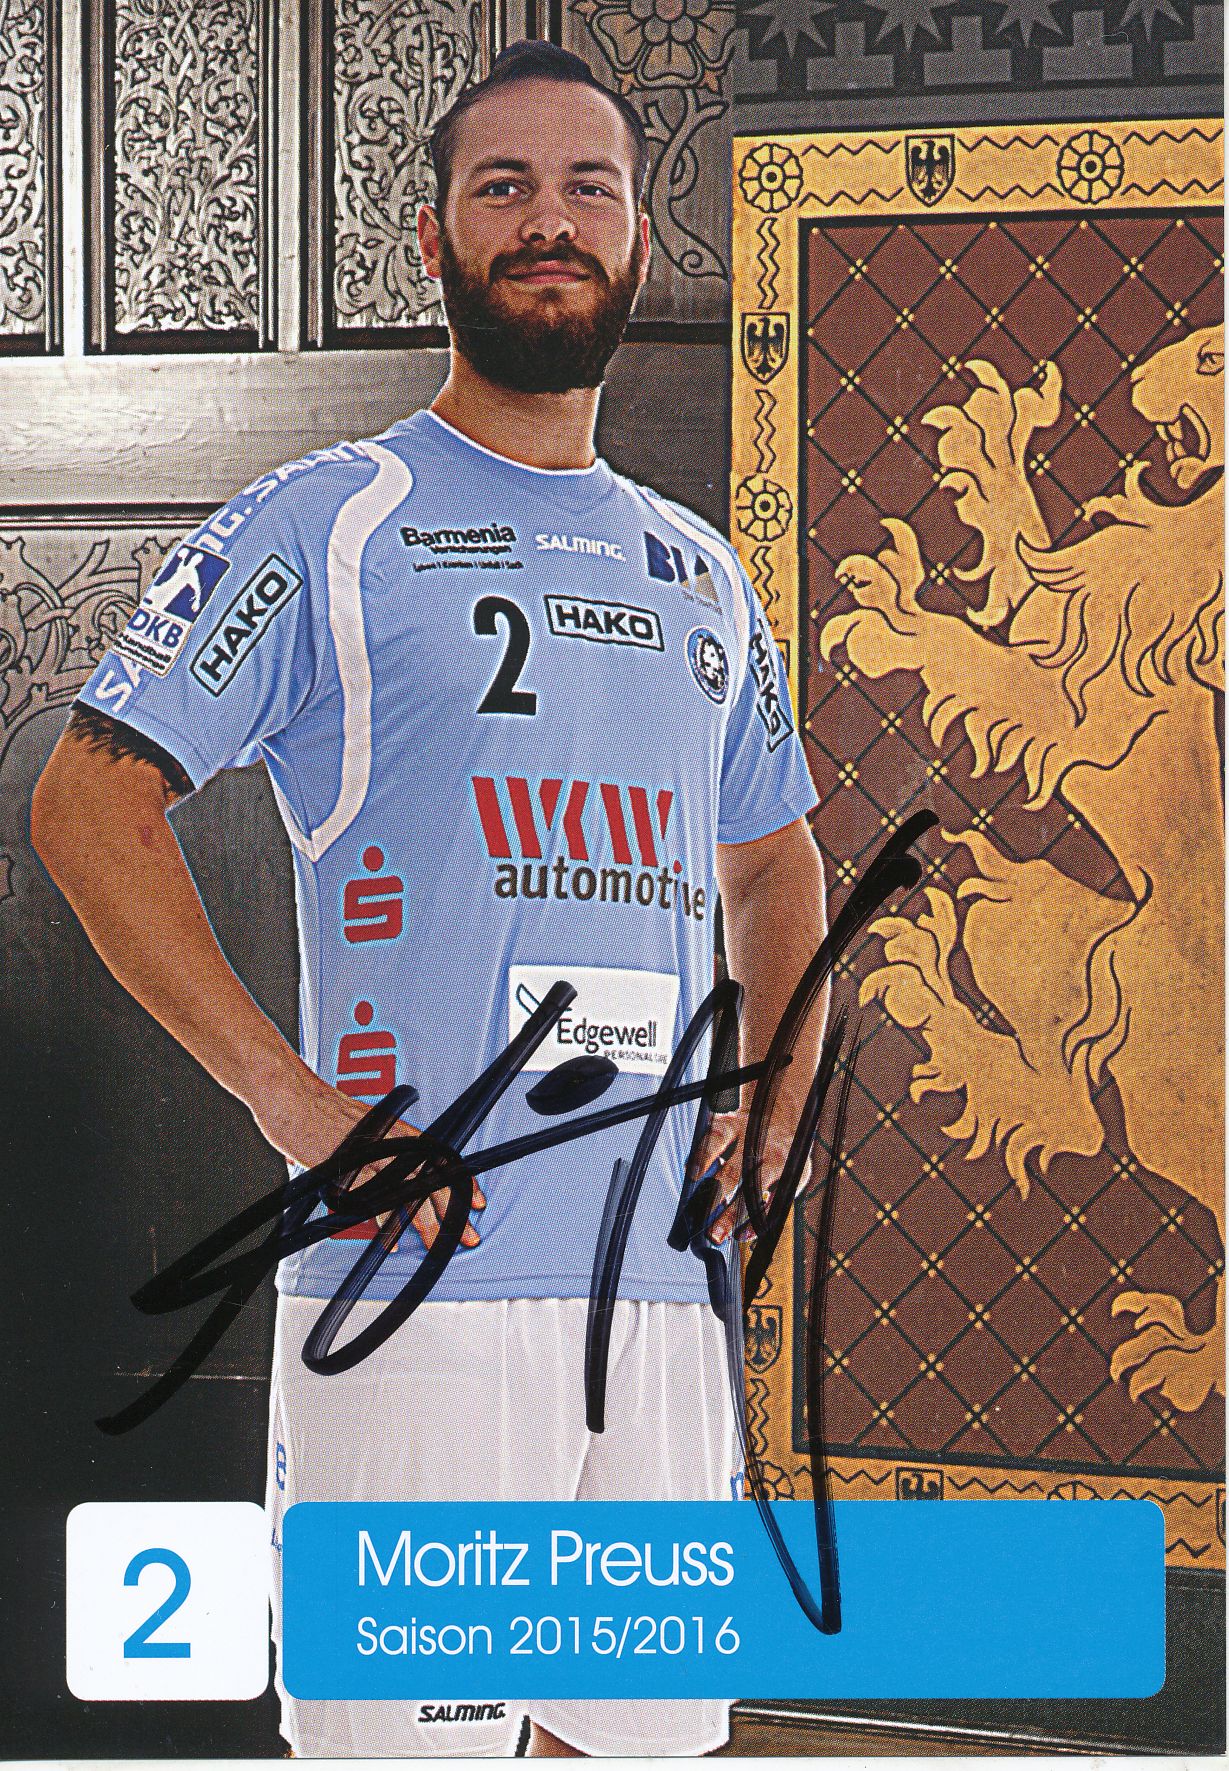 Moritz Preuss  VFL Gummersbach Handball Autogrammkarte signiert  361985 